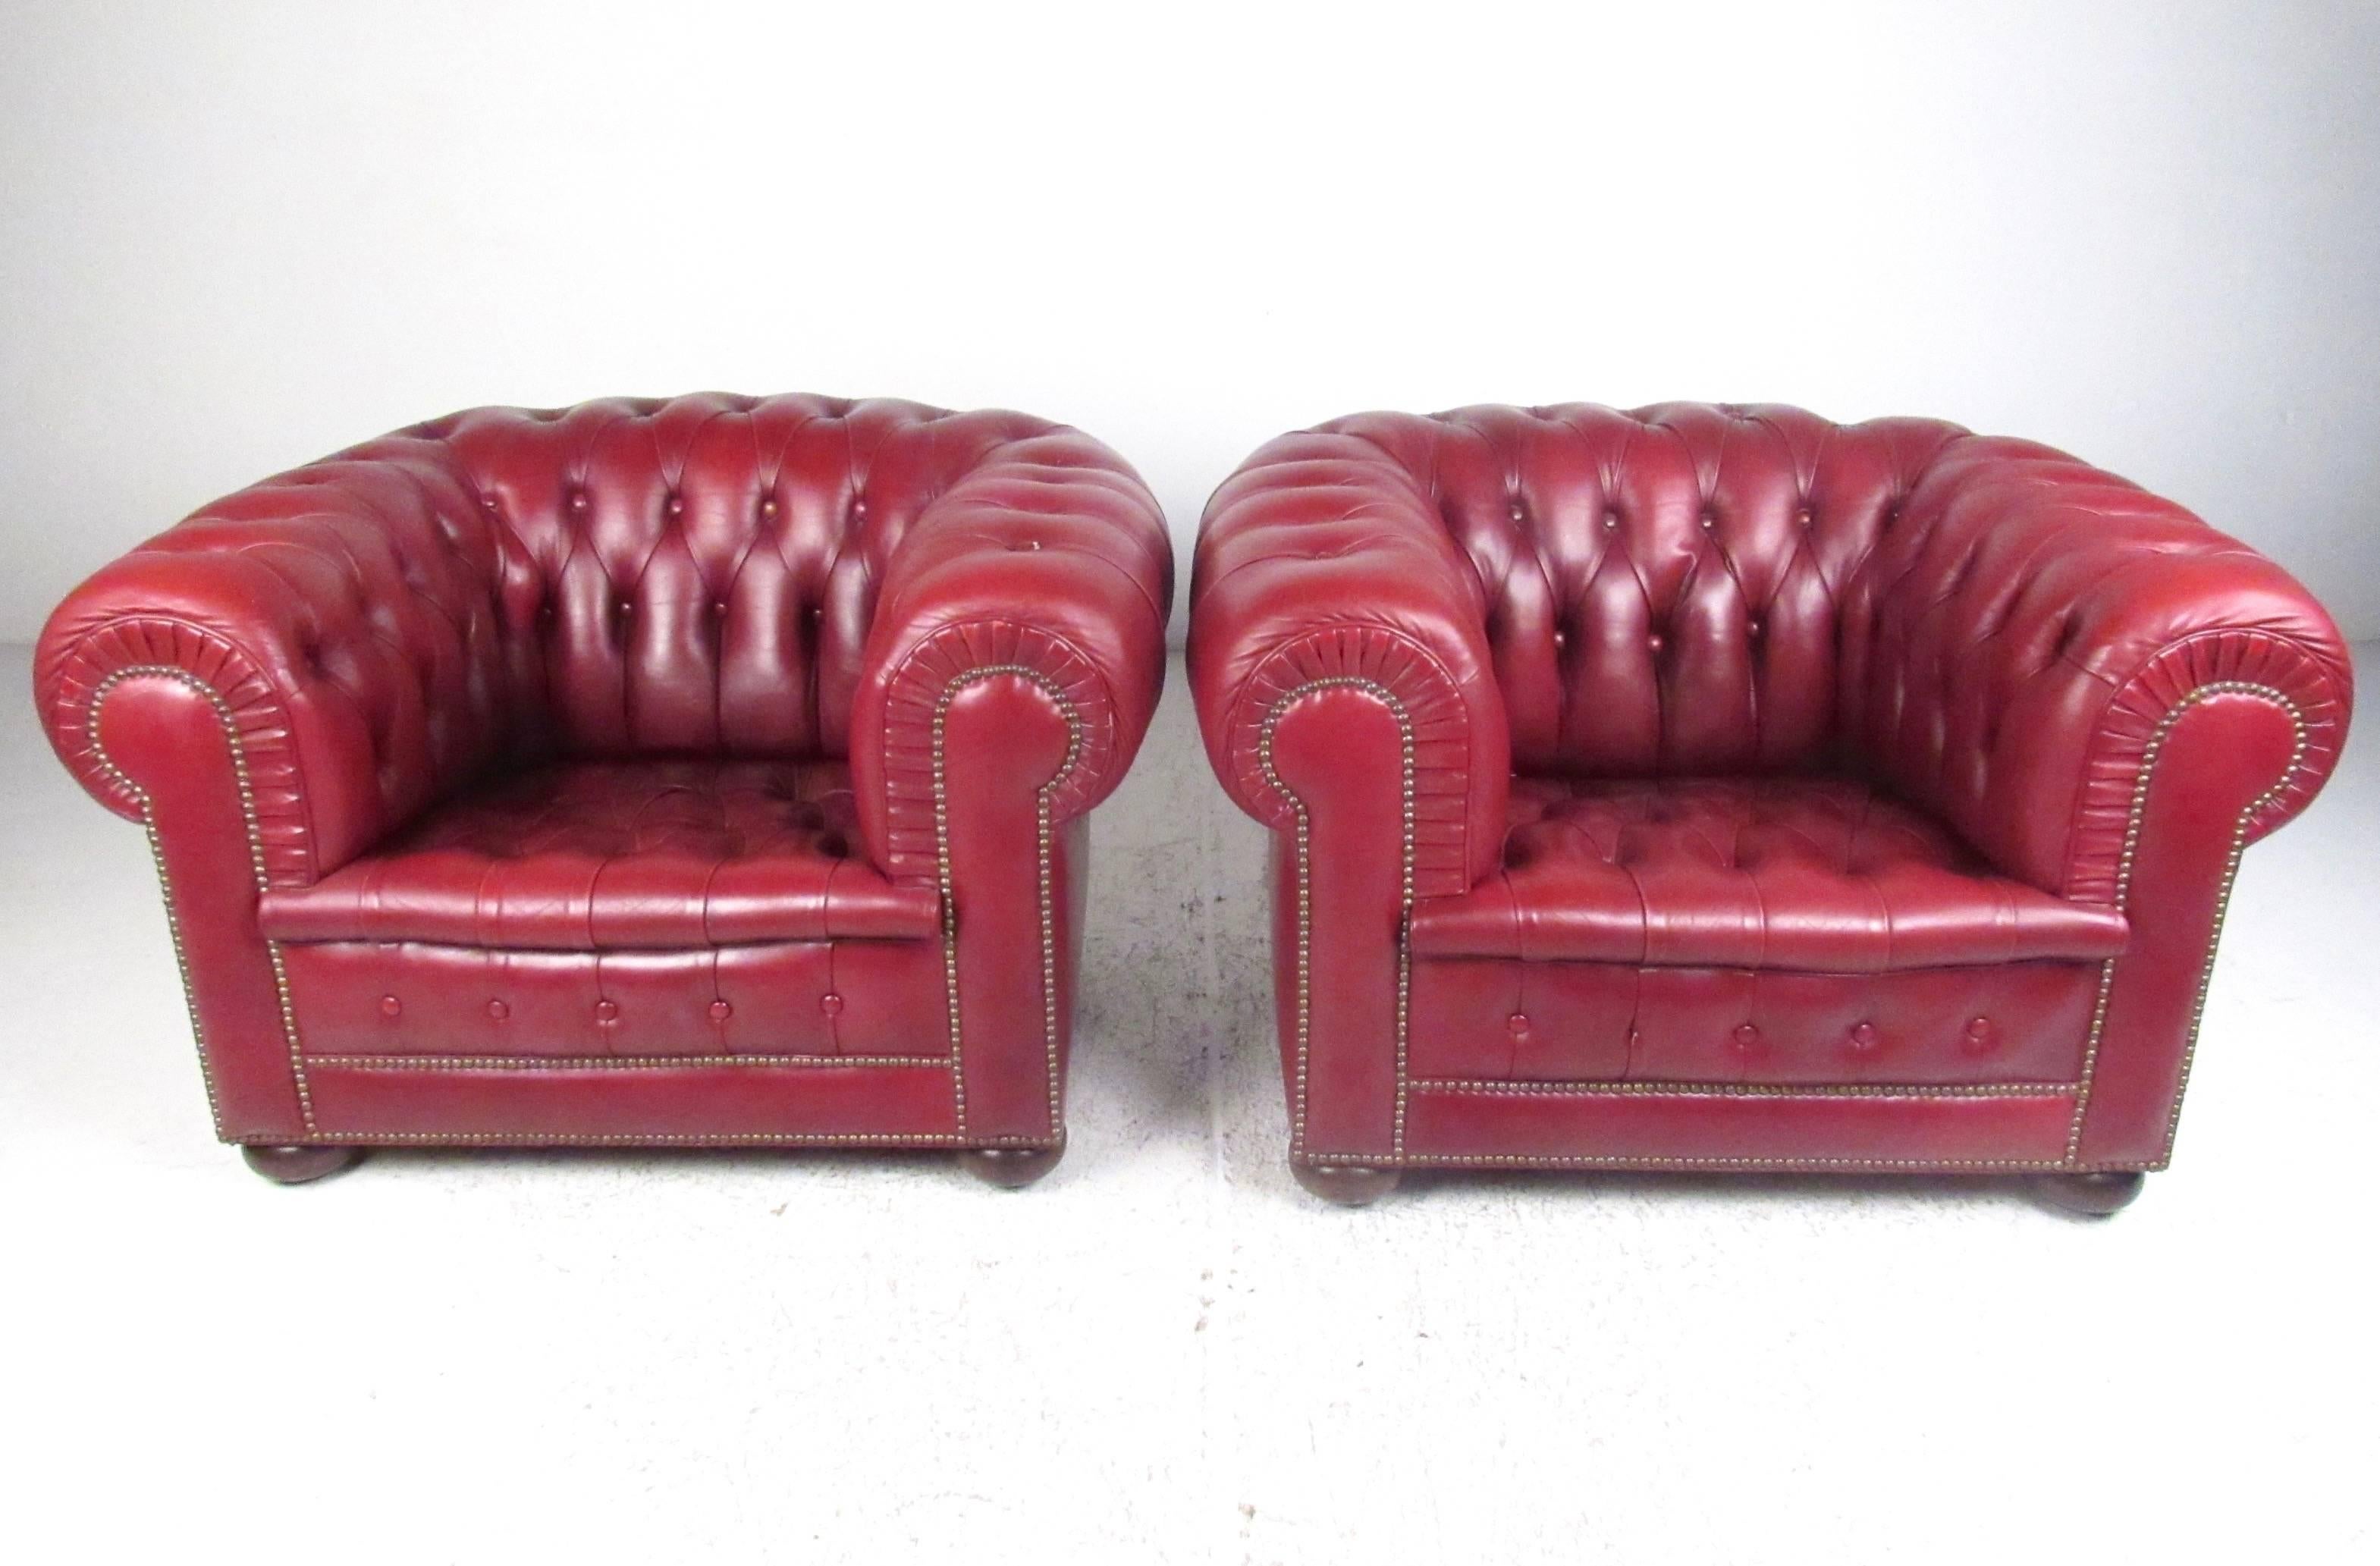 Cette élégante paire de fauteuils de salon Chesterfield présente un revêtement en cuir rouge sang-de-bœuf pelucheux, des sièges spacieux et confortables, et des pieds arrondis en bois dur. Les fauteuils club de grande qualité constituent un ajout